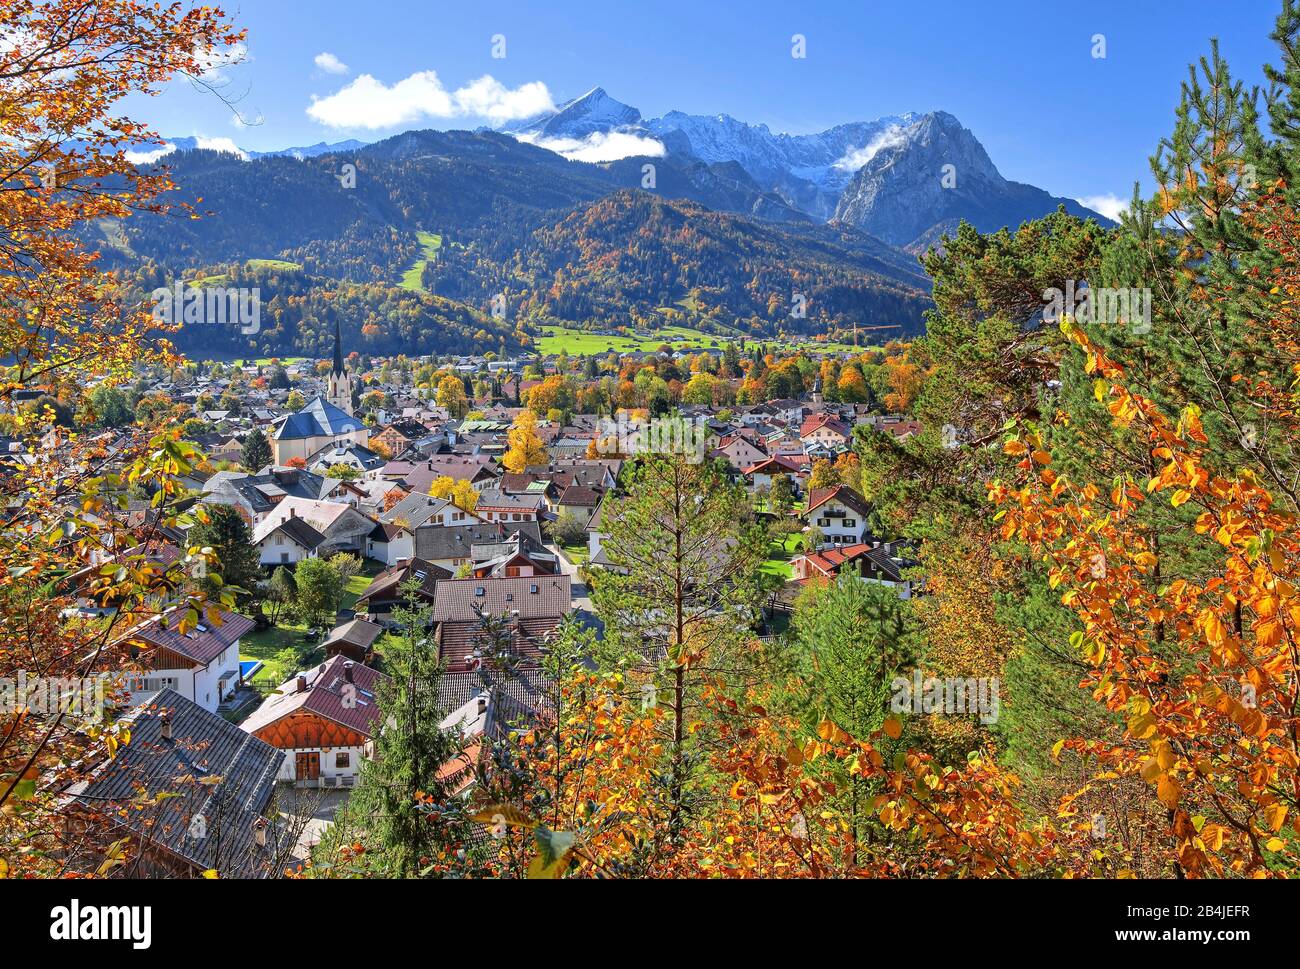 Overview of the district Partenkirchen against Zugspitzgruppe (2962m), Garmisch-Partenkirchen, Wetterstein Mountains, Werdenfelser Land, Upper Bavaria, Bavaria, Germany Stock Photo